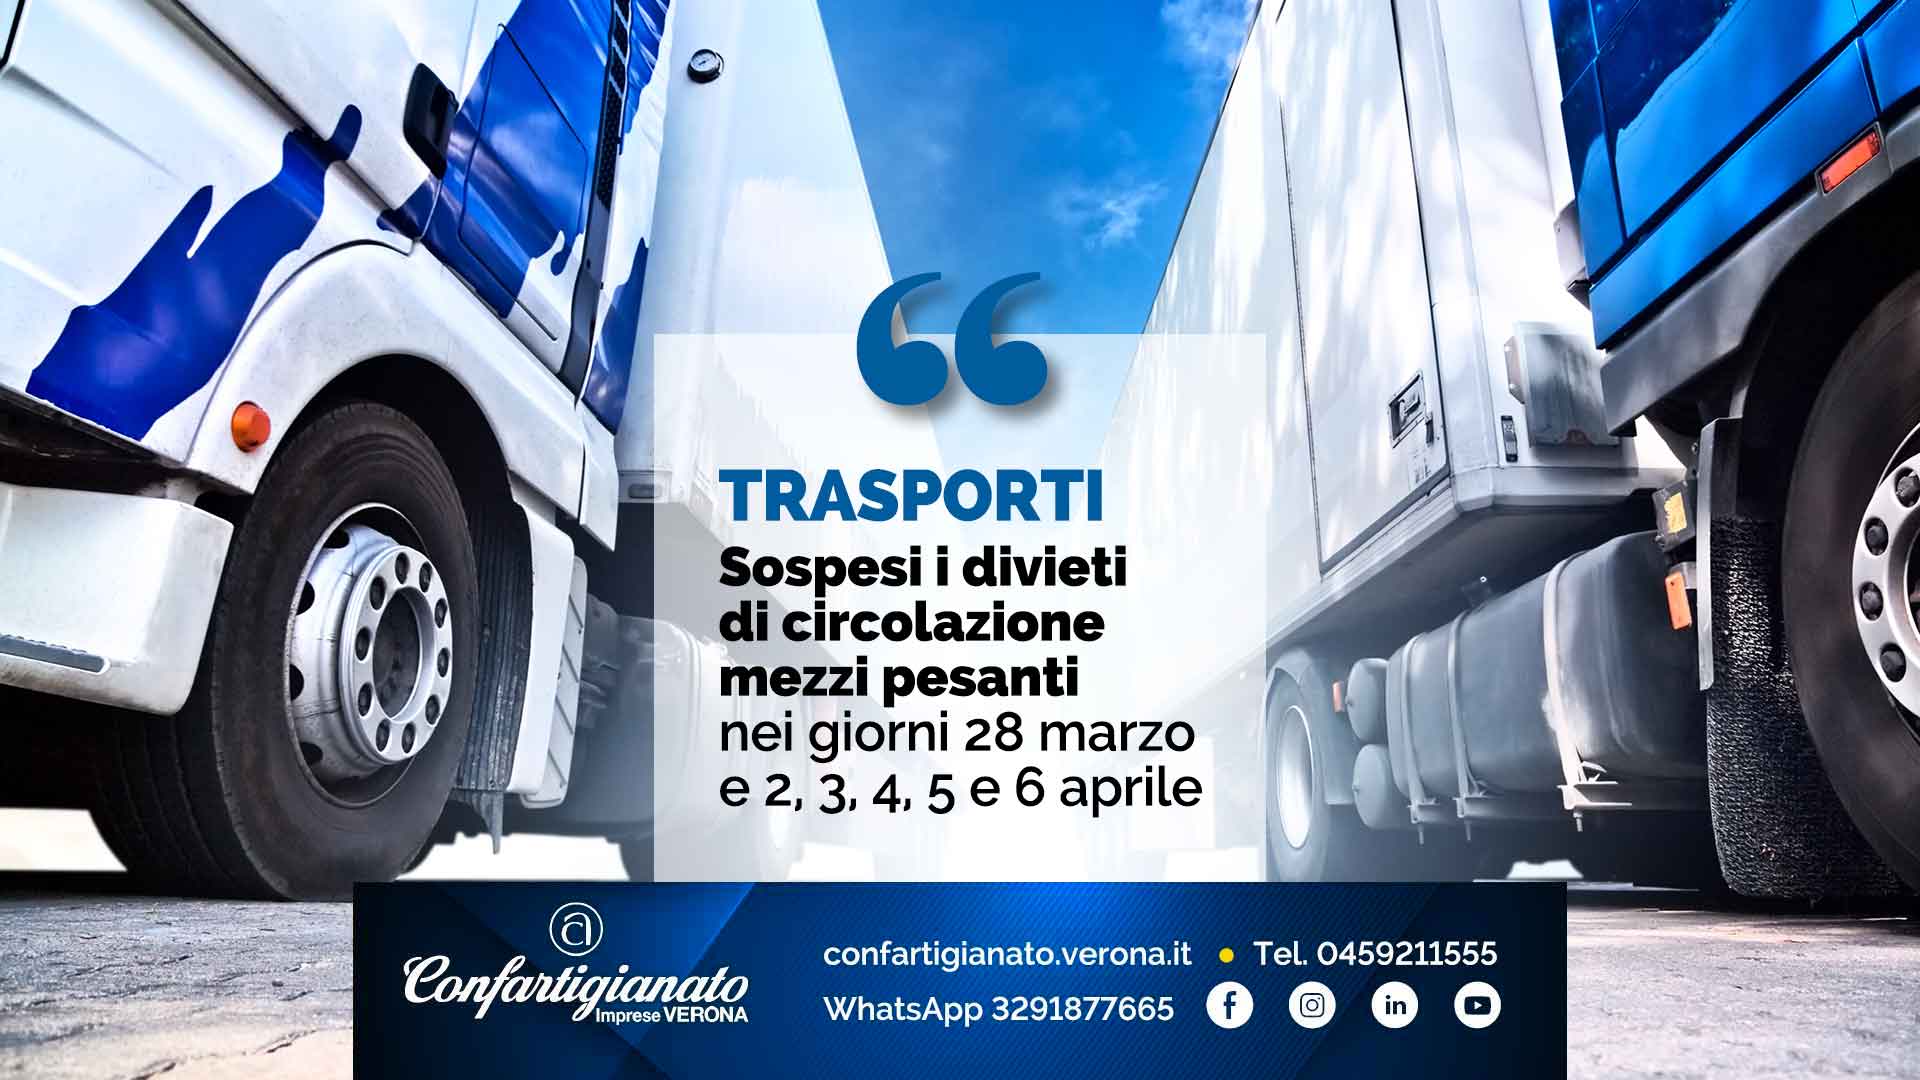 TRASPORTI – Sospesi i divieti di circolazione mezzi pesanti nei giorni 28 marzo e 2, 3, 4, 5 e 6 aprile